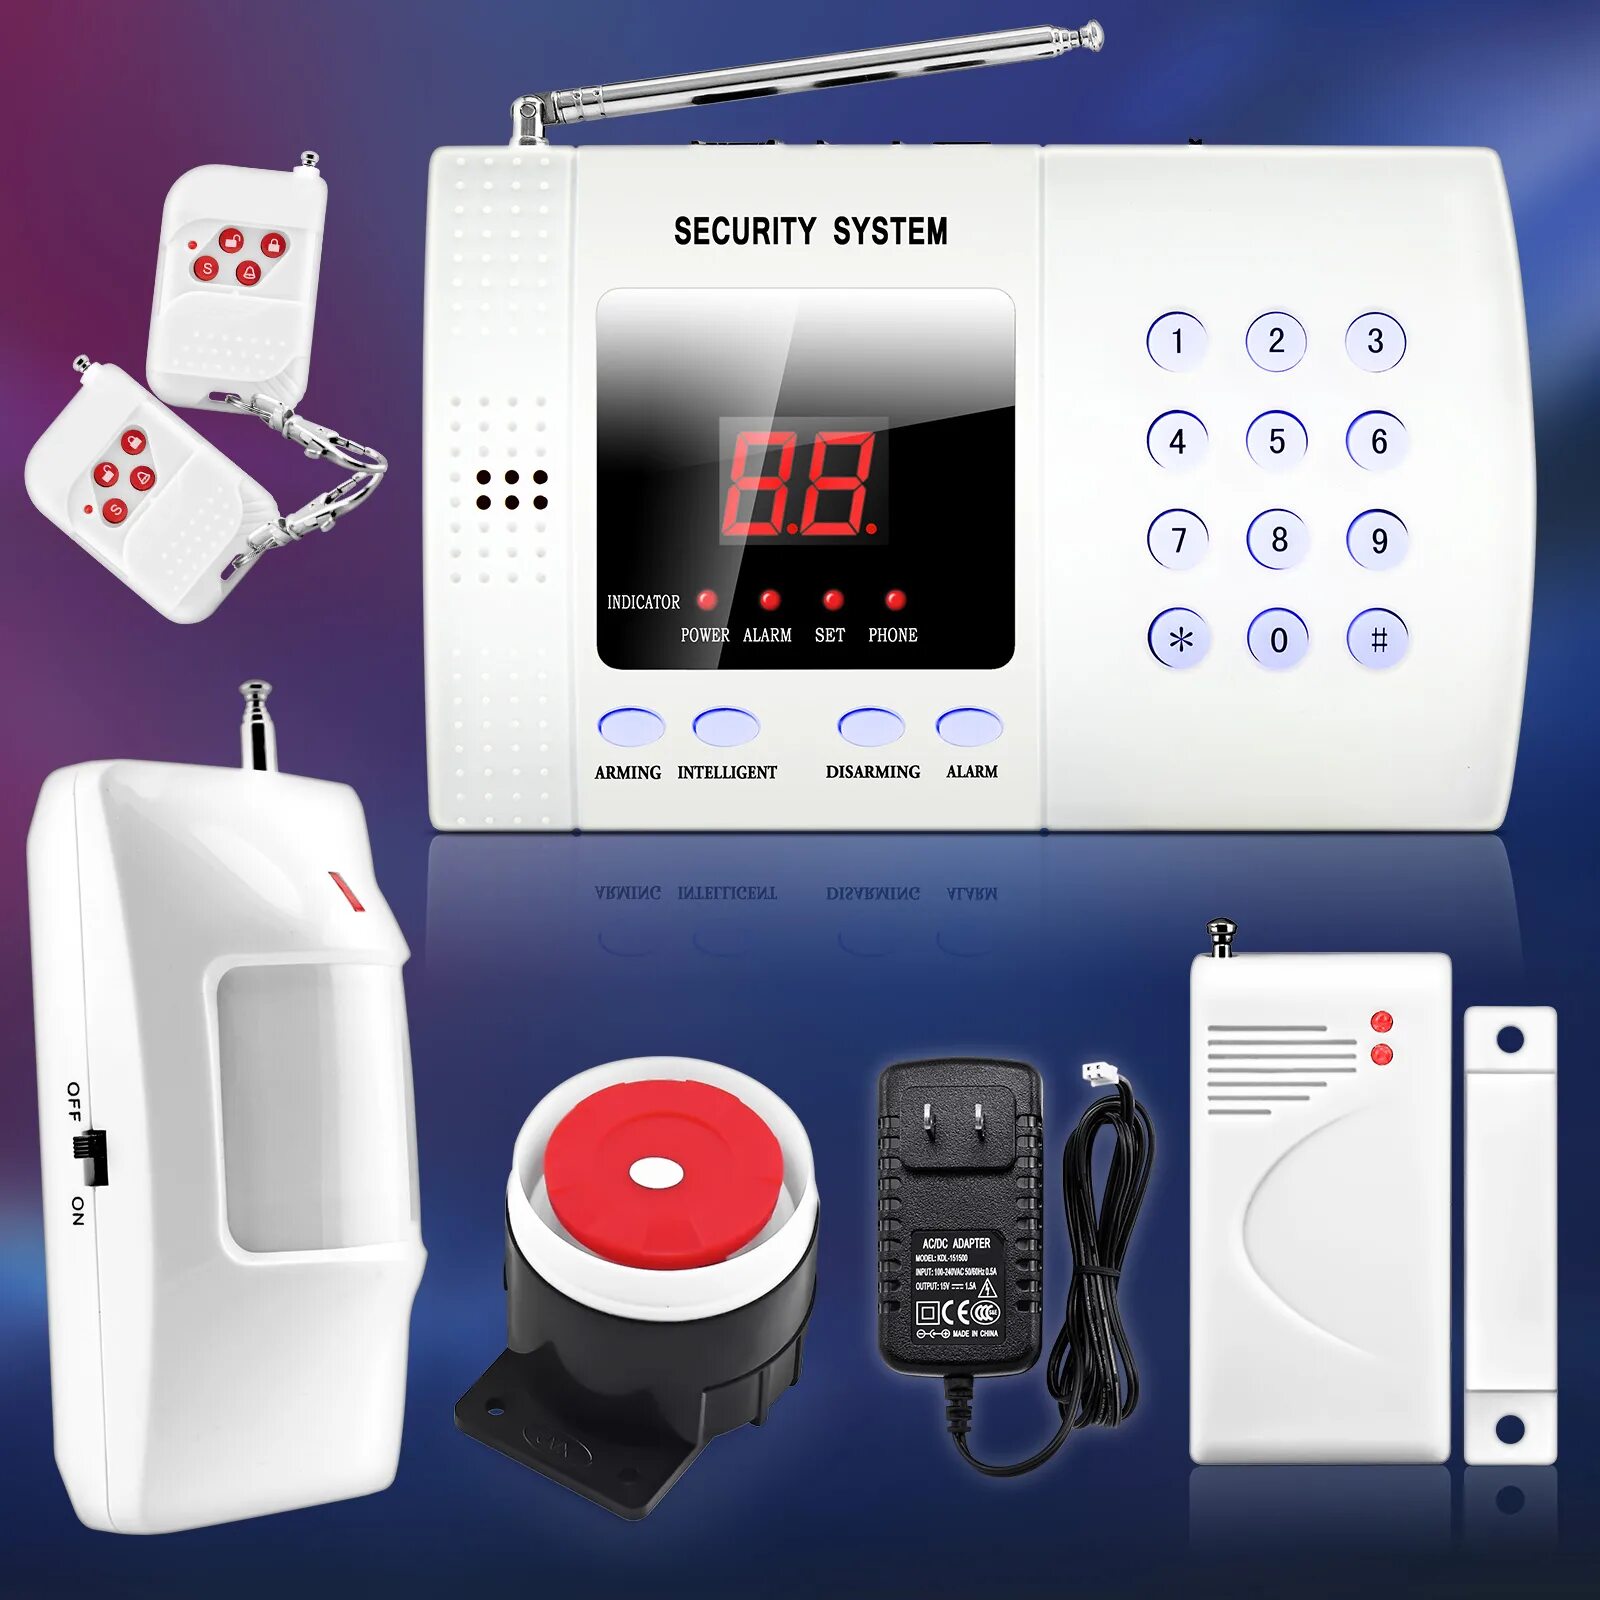 Gsm alarm system. Охранная сигнализация Smart Unit gsm30a. Сигнализация Security Alarm System. GSM Smart Alarm System сигнализации. Охранная система секьюрити Аларм.